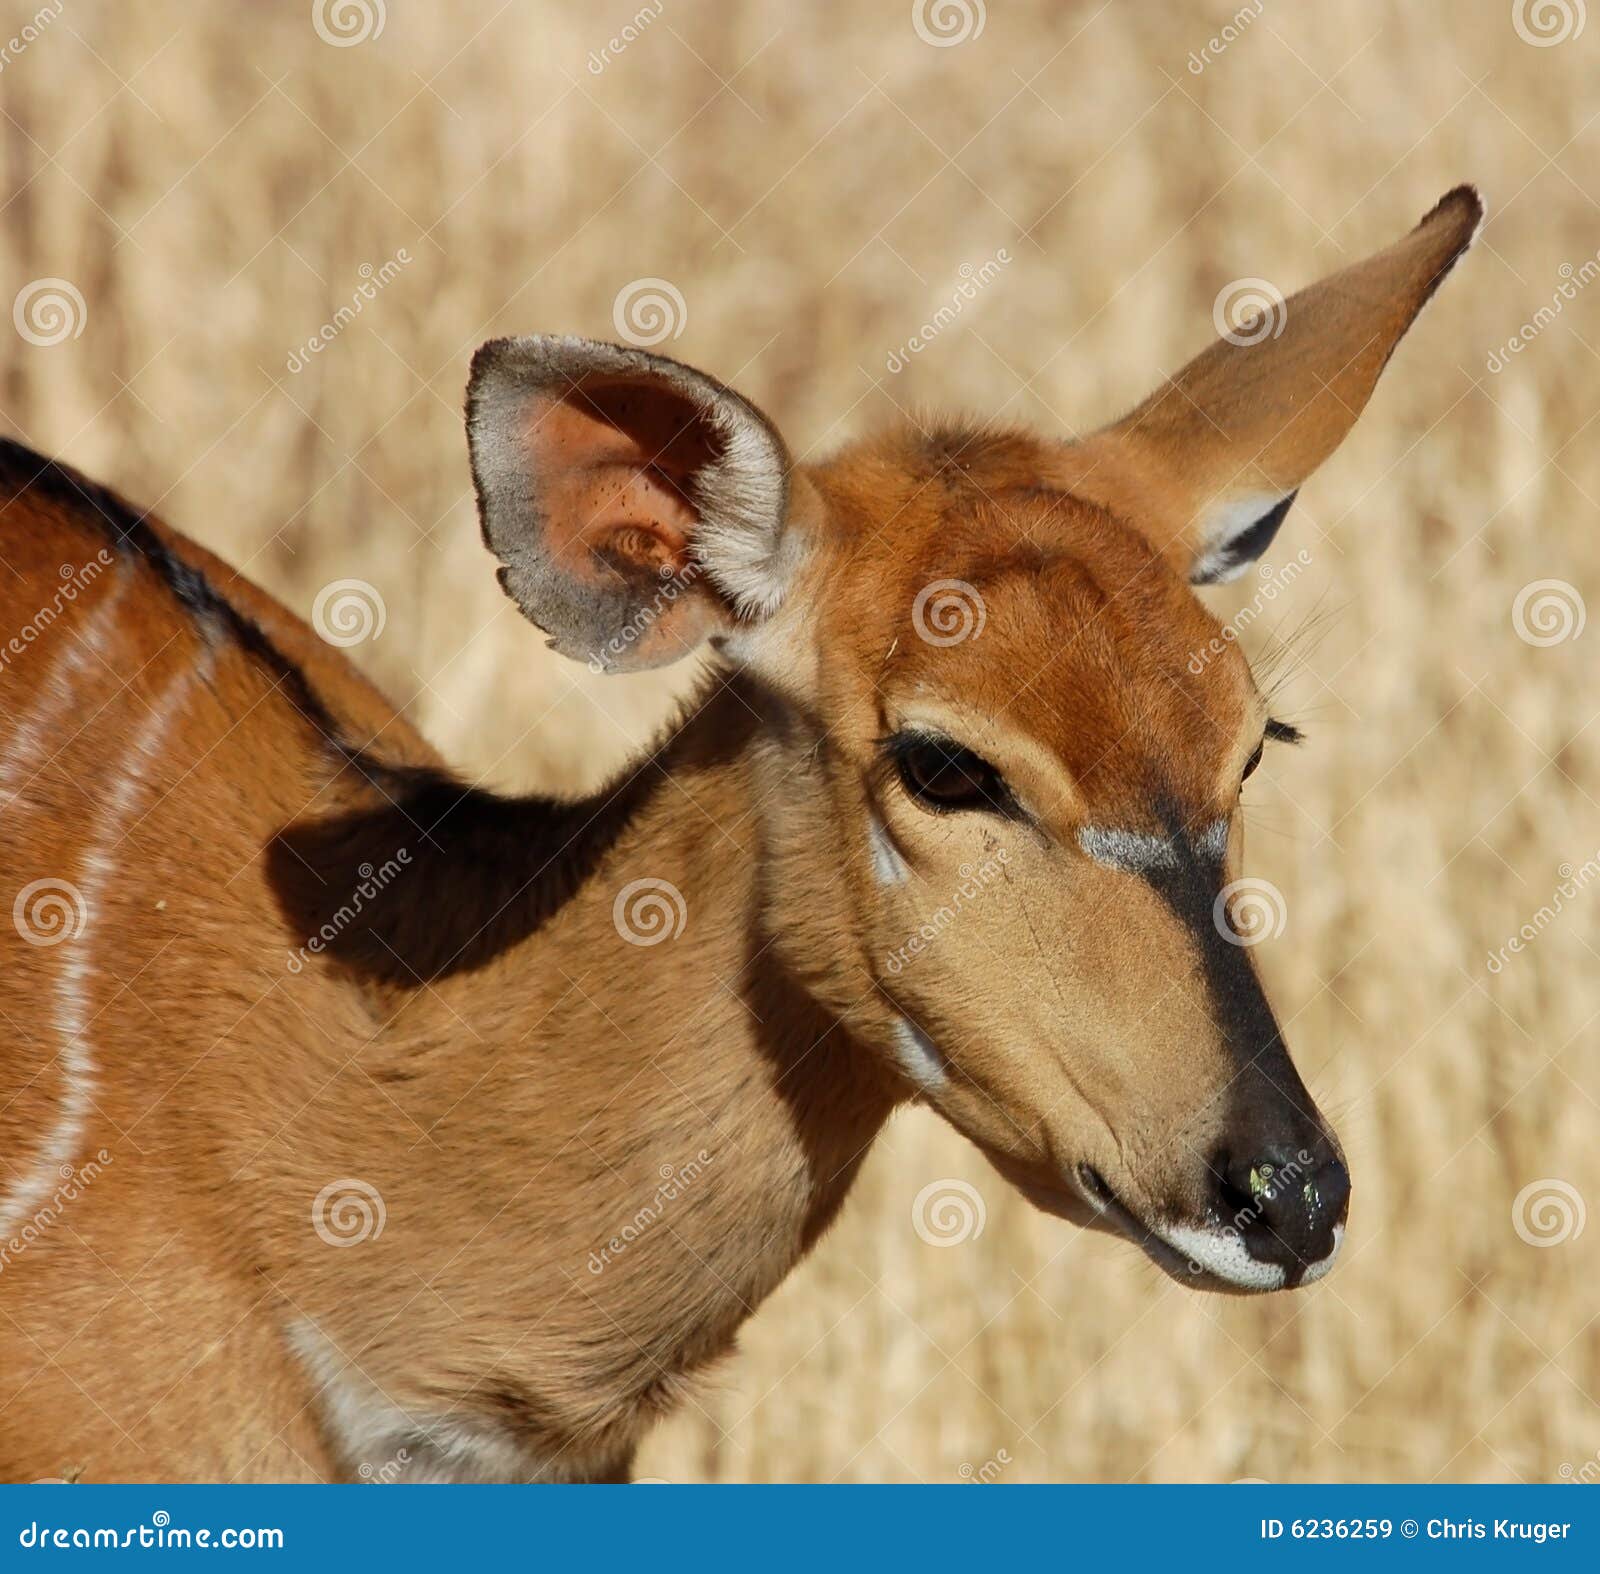 nyala antelope